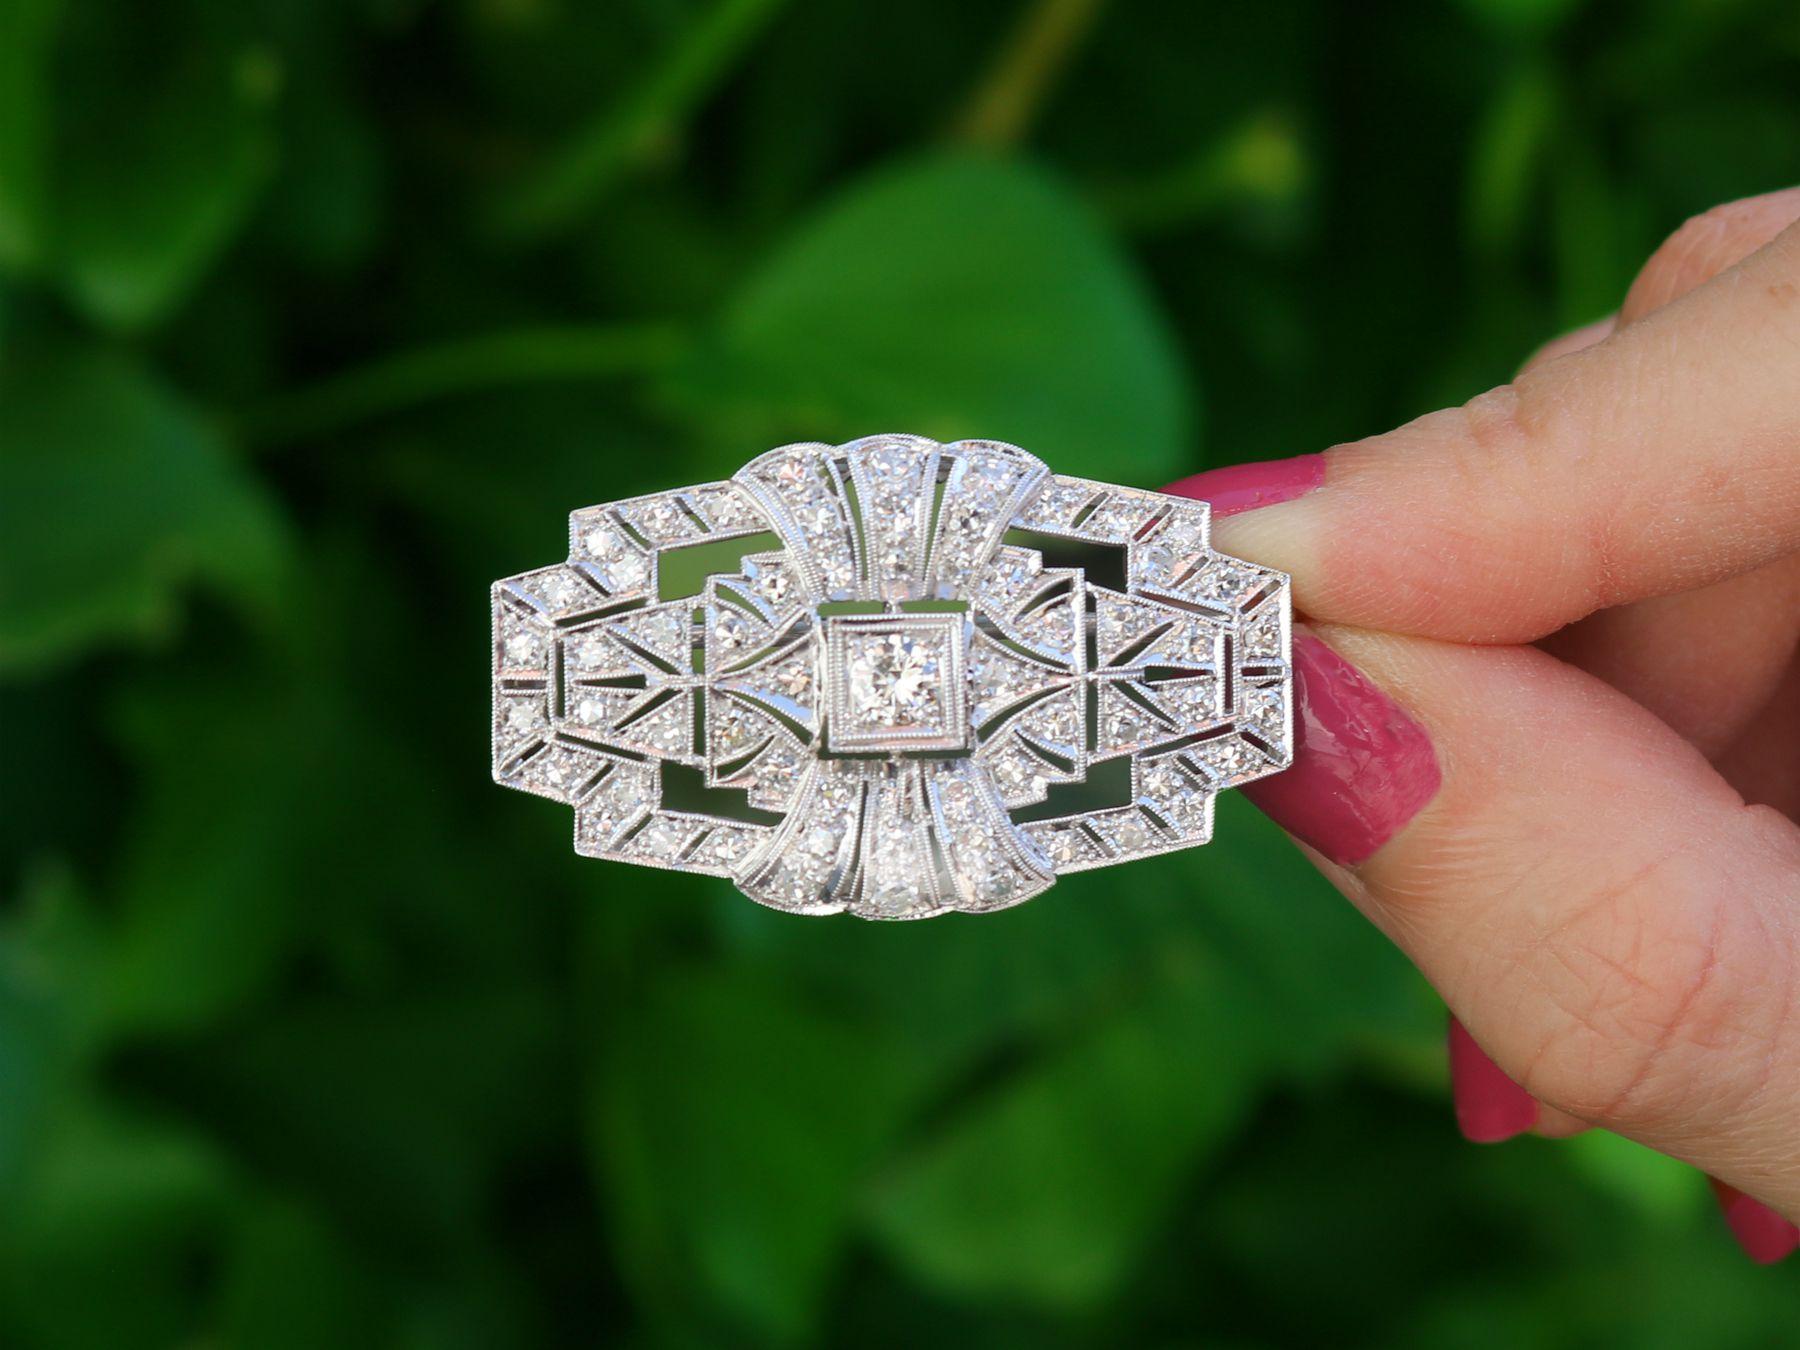 Eine atemberaubende, feine und beeindruckende Art Deco-Brosche mit 2,16 Karat Diamanten und Platin; Teil unserer vielfältigen antiken Schmuck- und Estate Jewelry-Kollektionen.

Diese atemberaubende, edle und beeindruckende Diamantbrosche ist aus